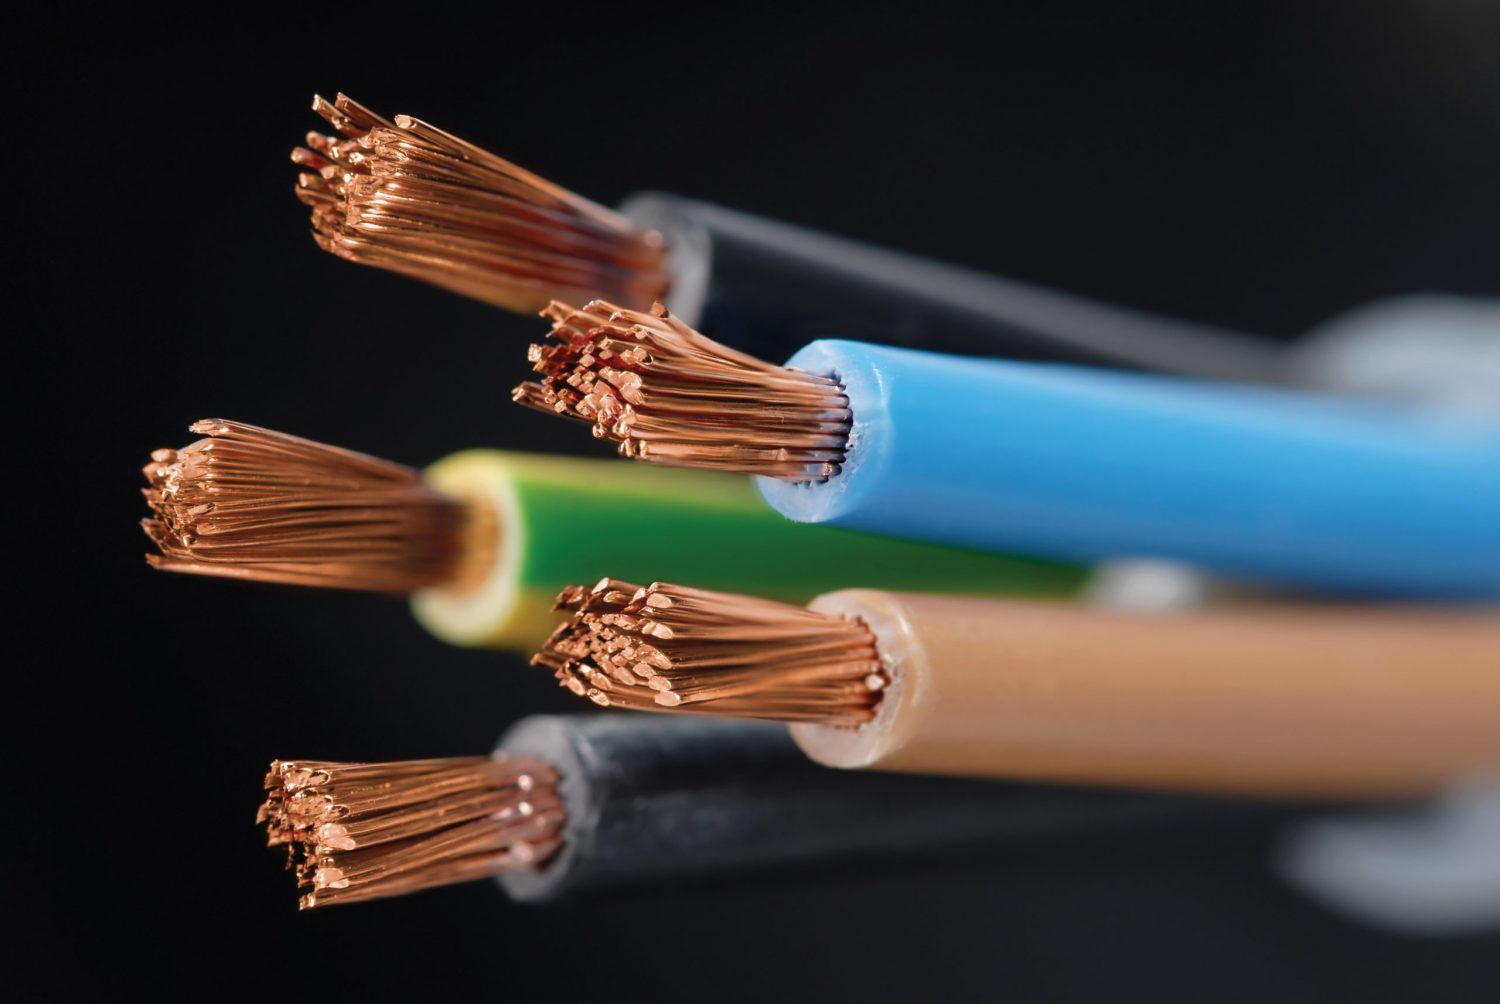 Reconoce un cable eléctrico de buena calidad